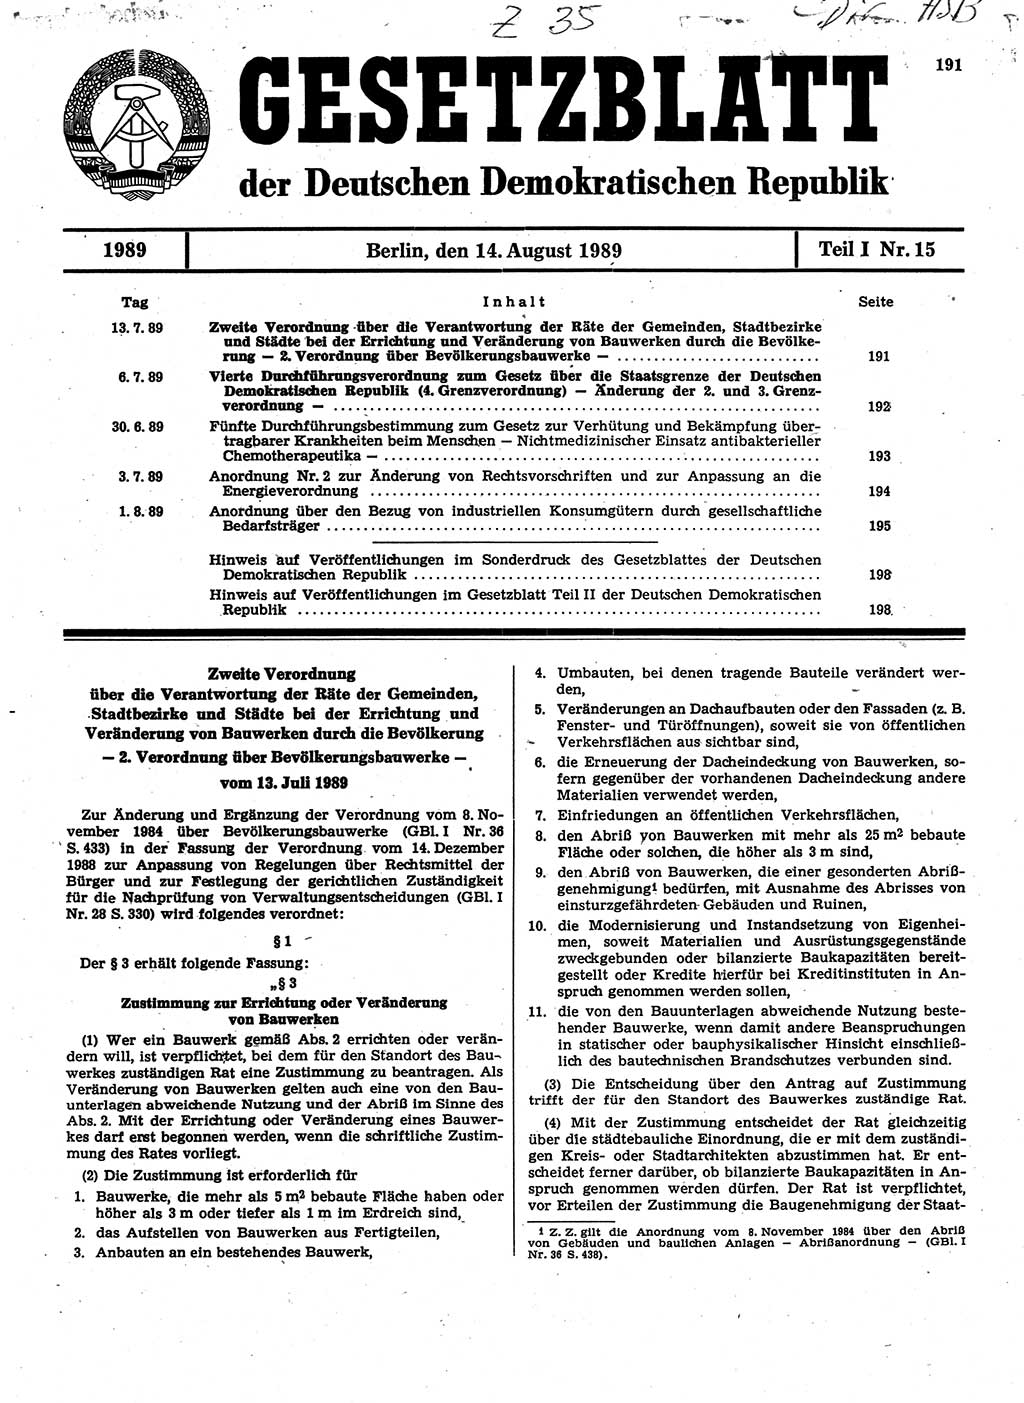 Gesetzblatt (GBl.) der Deutschen Demokratischen Republik (DDR) Teil Ⅰ 1989, Seite 191 (GBl. DDR Ⅰ 1989, S. 191)